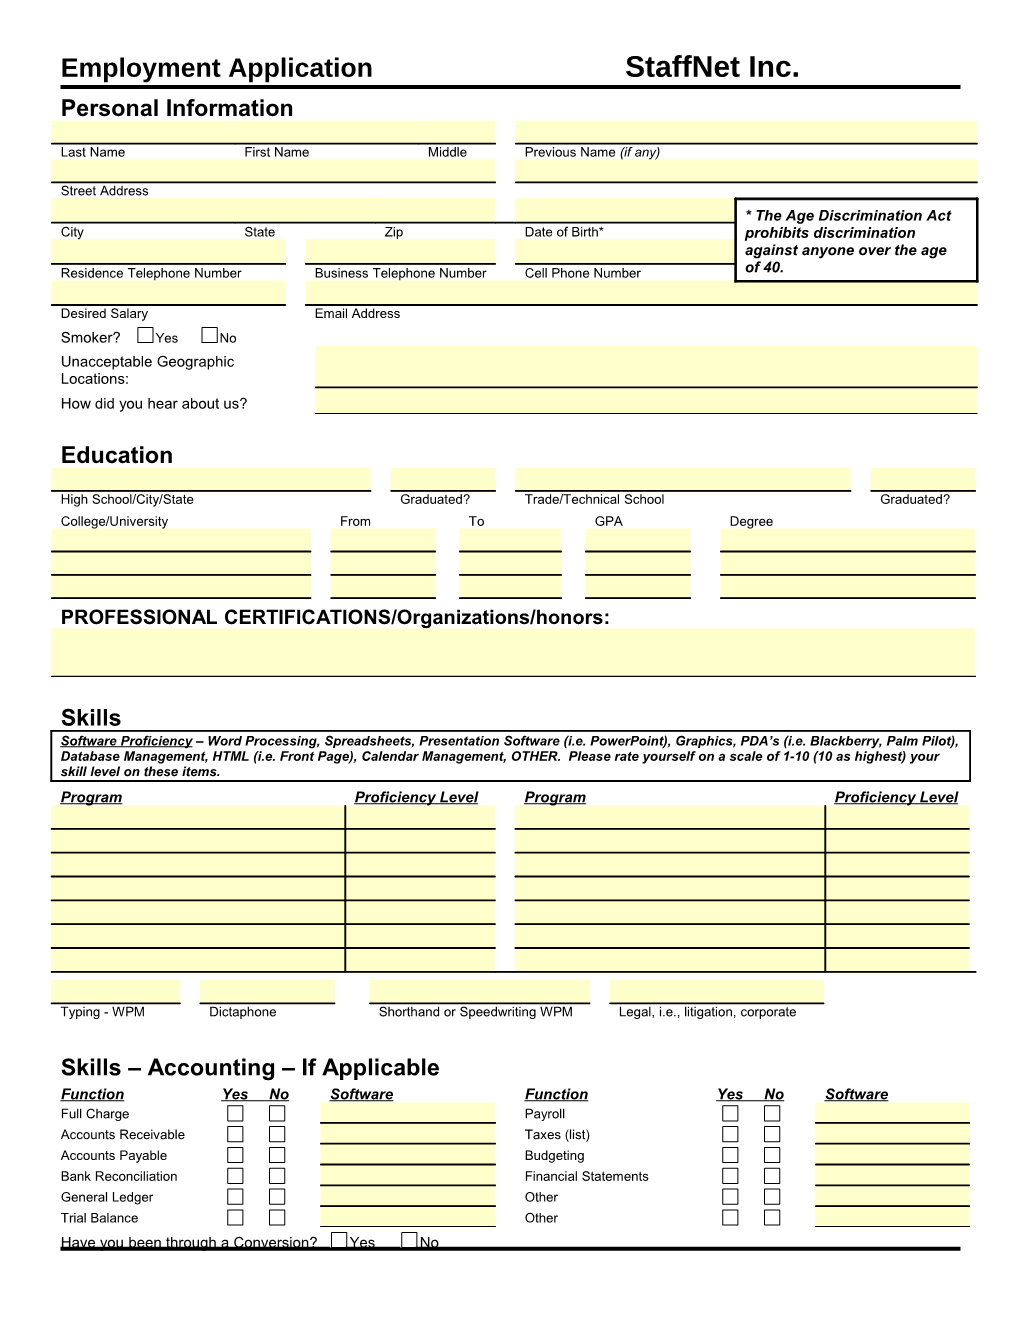 Employment Application Staffnet Inc